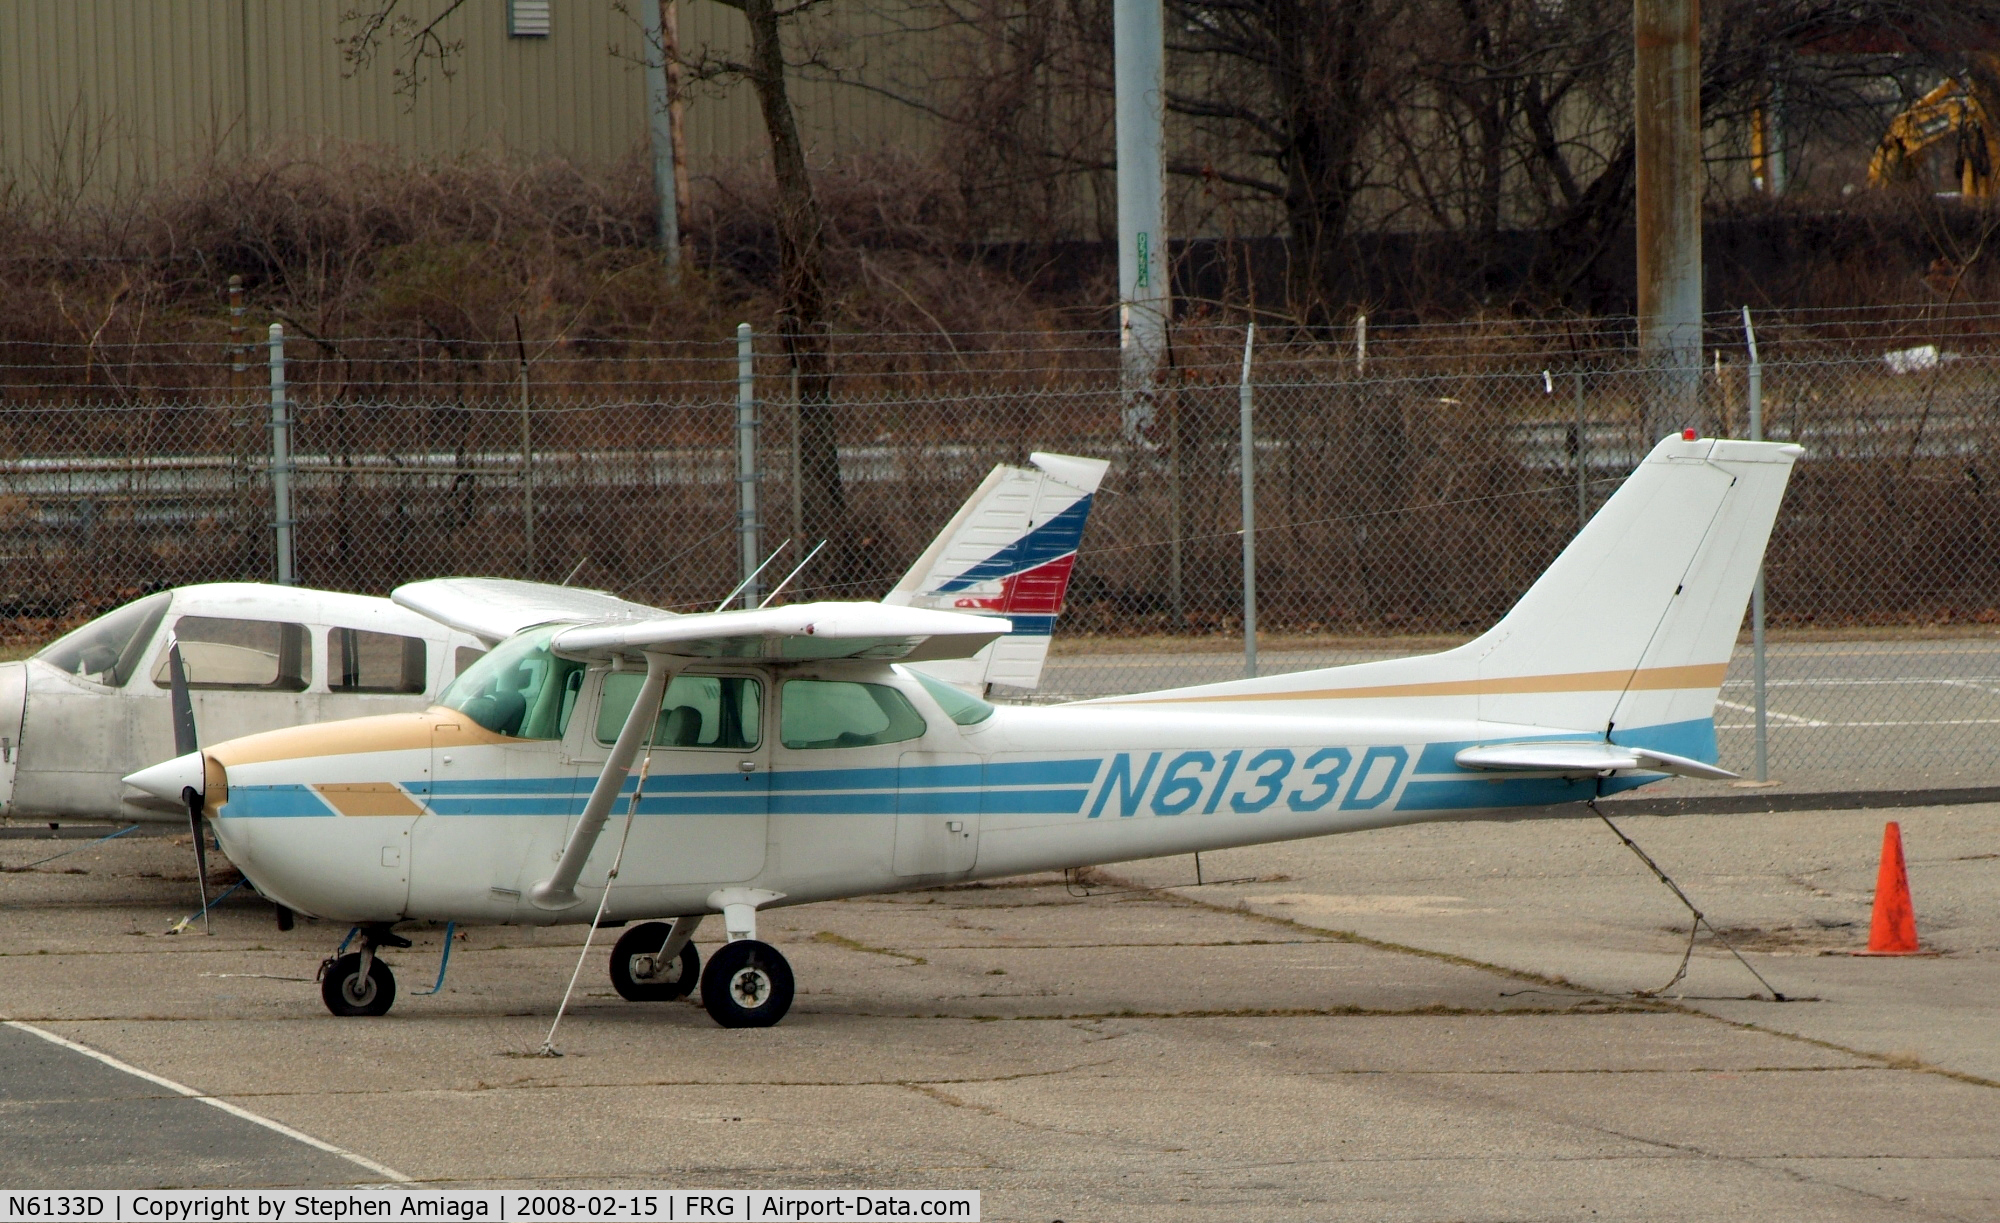 N6133D, 1979 Cessna 172N C/N 17272611, Parked at Atlantic